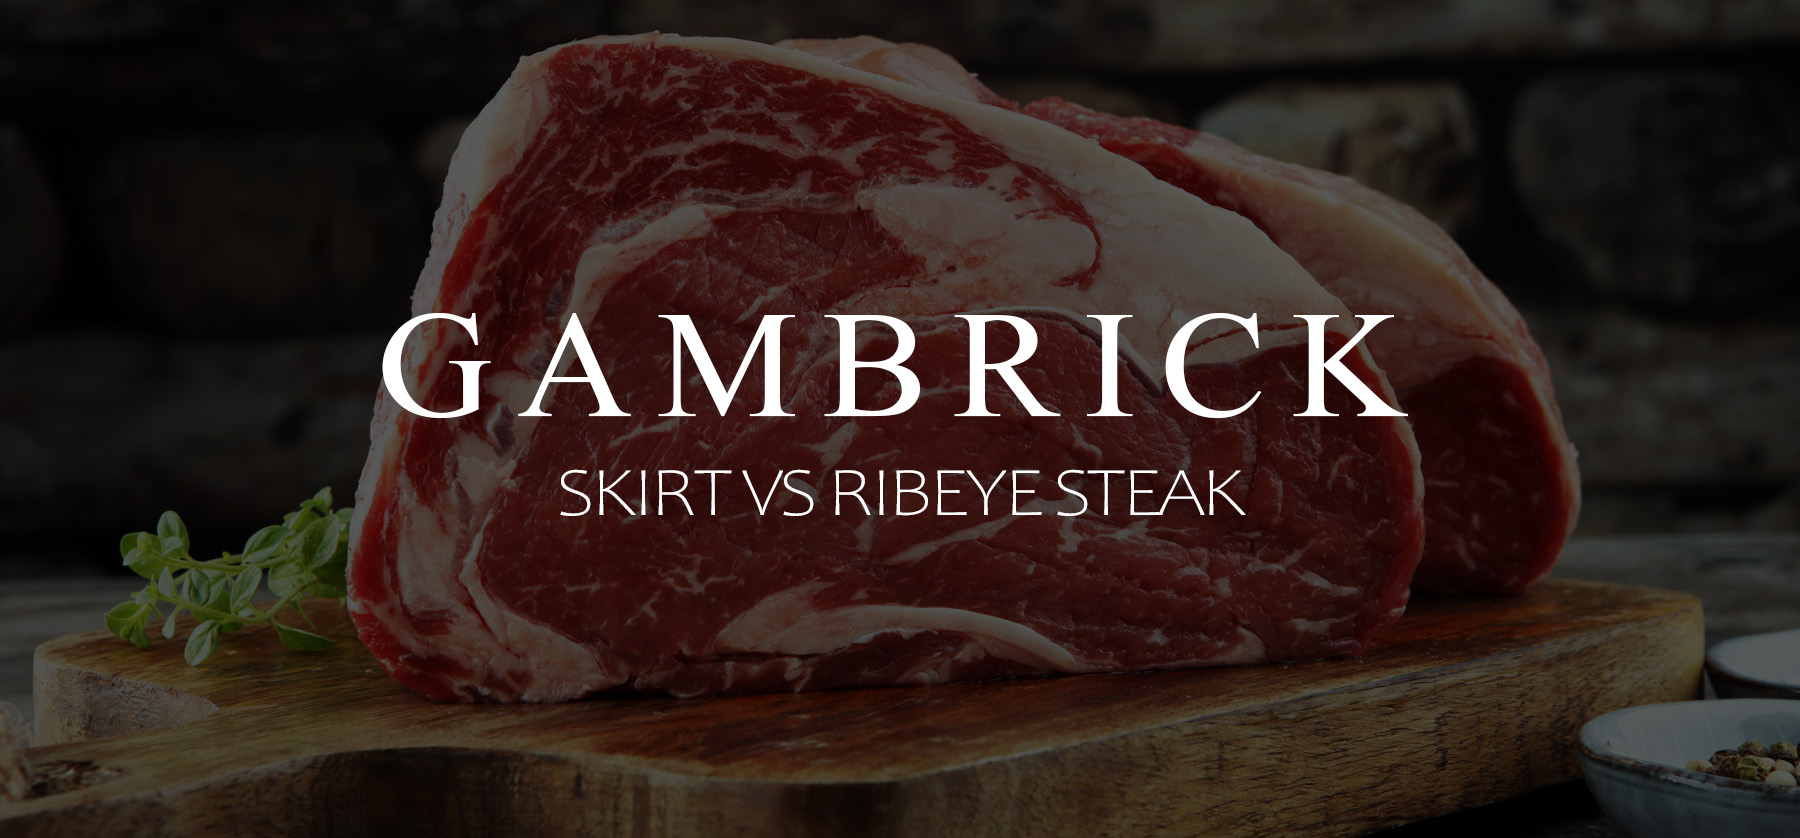 skirt vs ribeye steak banner